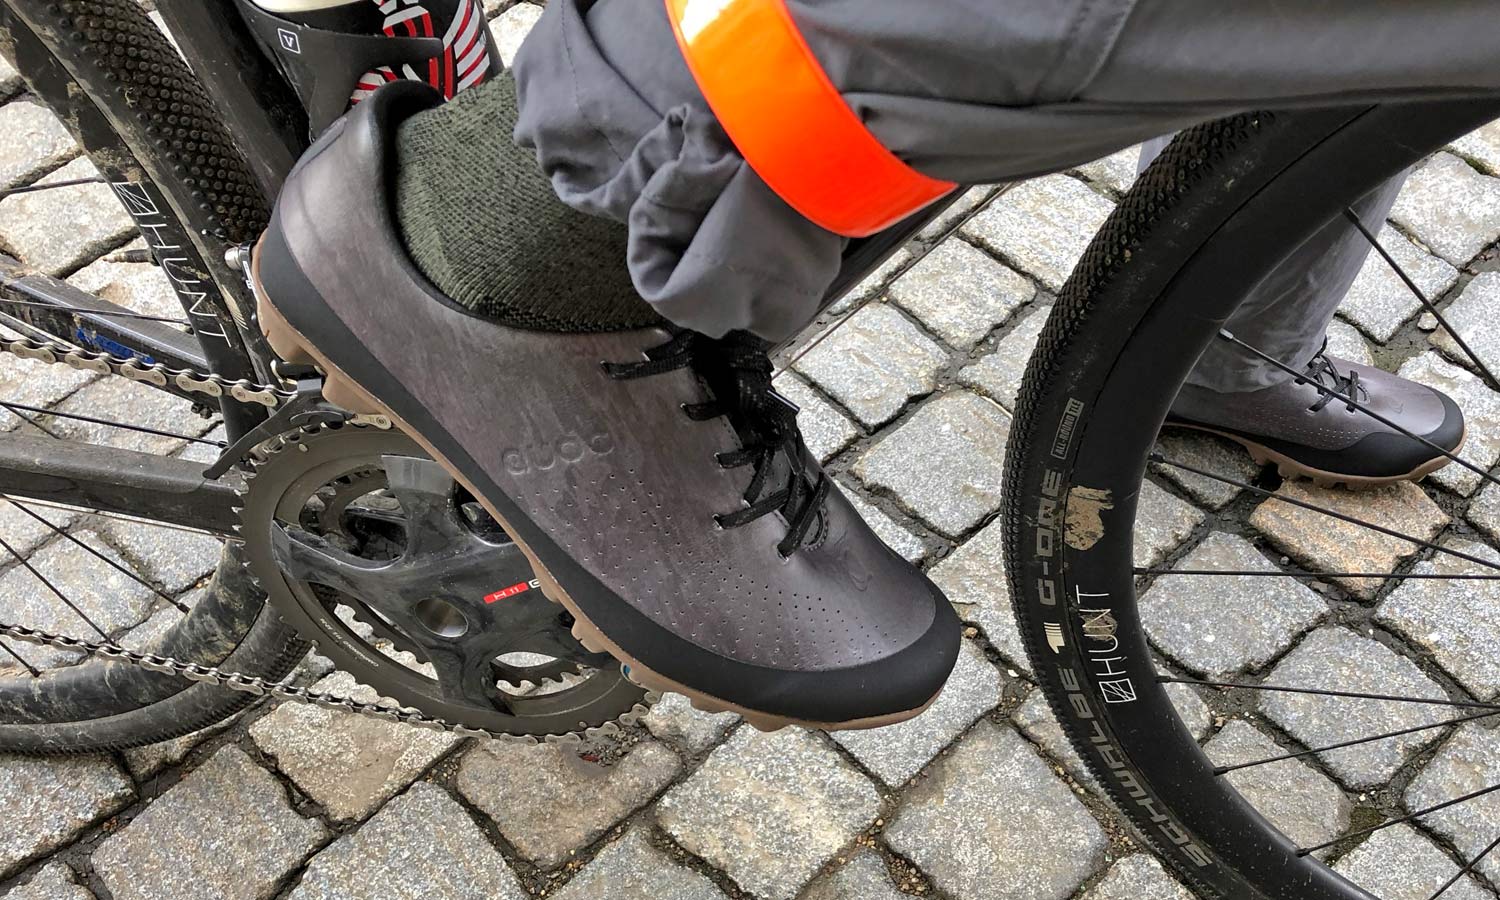 Sneak Peek at Quoc’s upcoming Gran Tourer gravel bike shoes